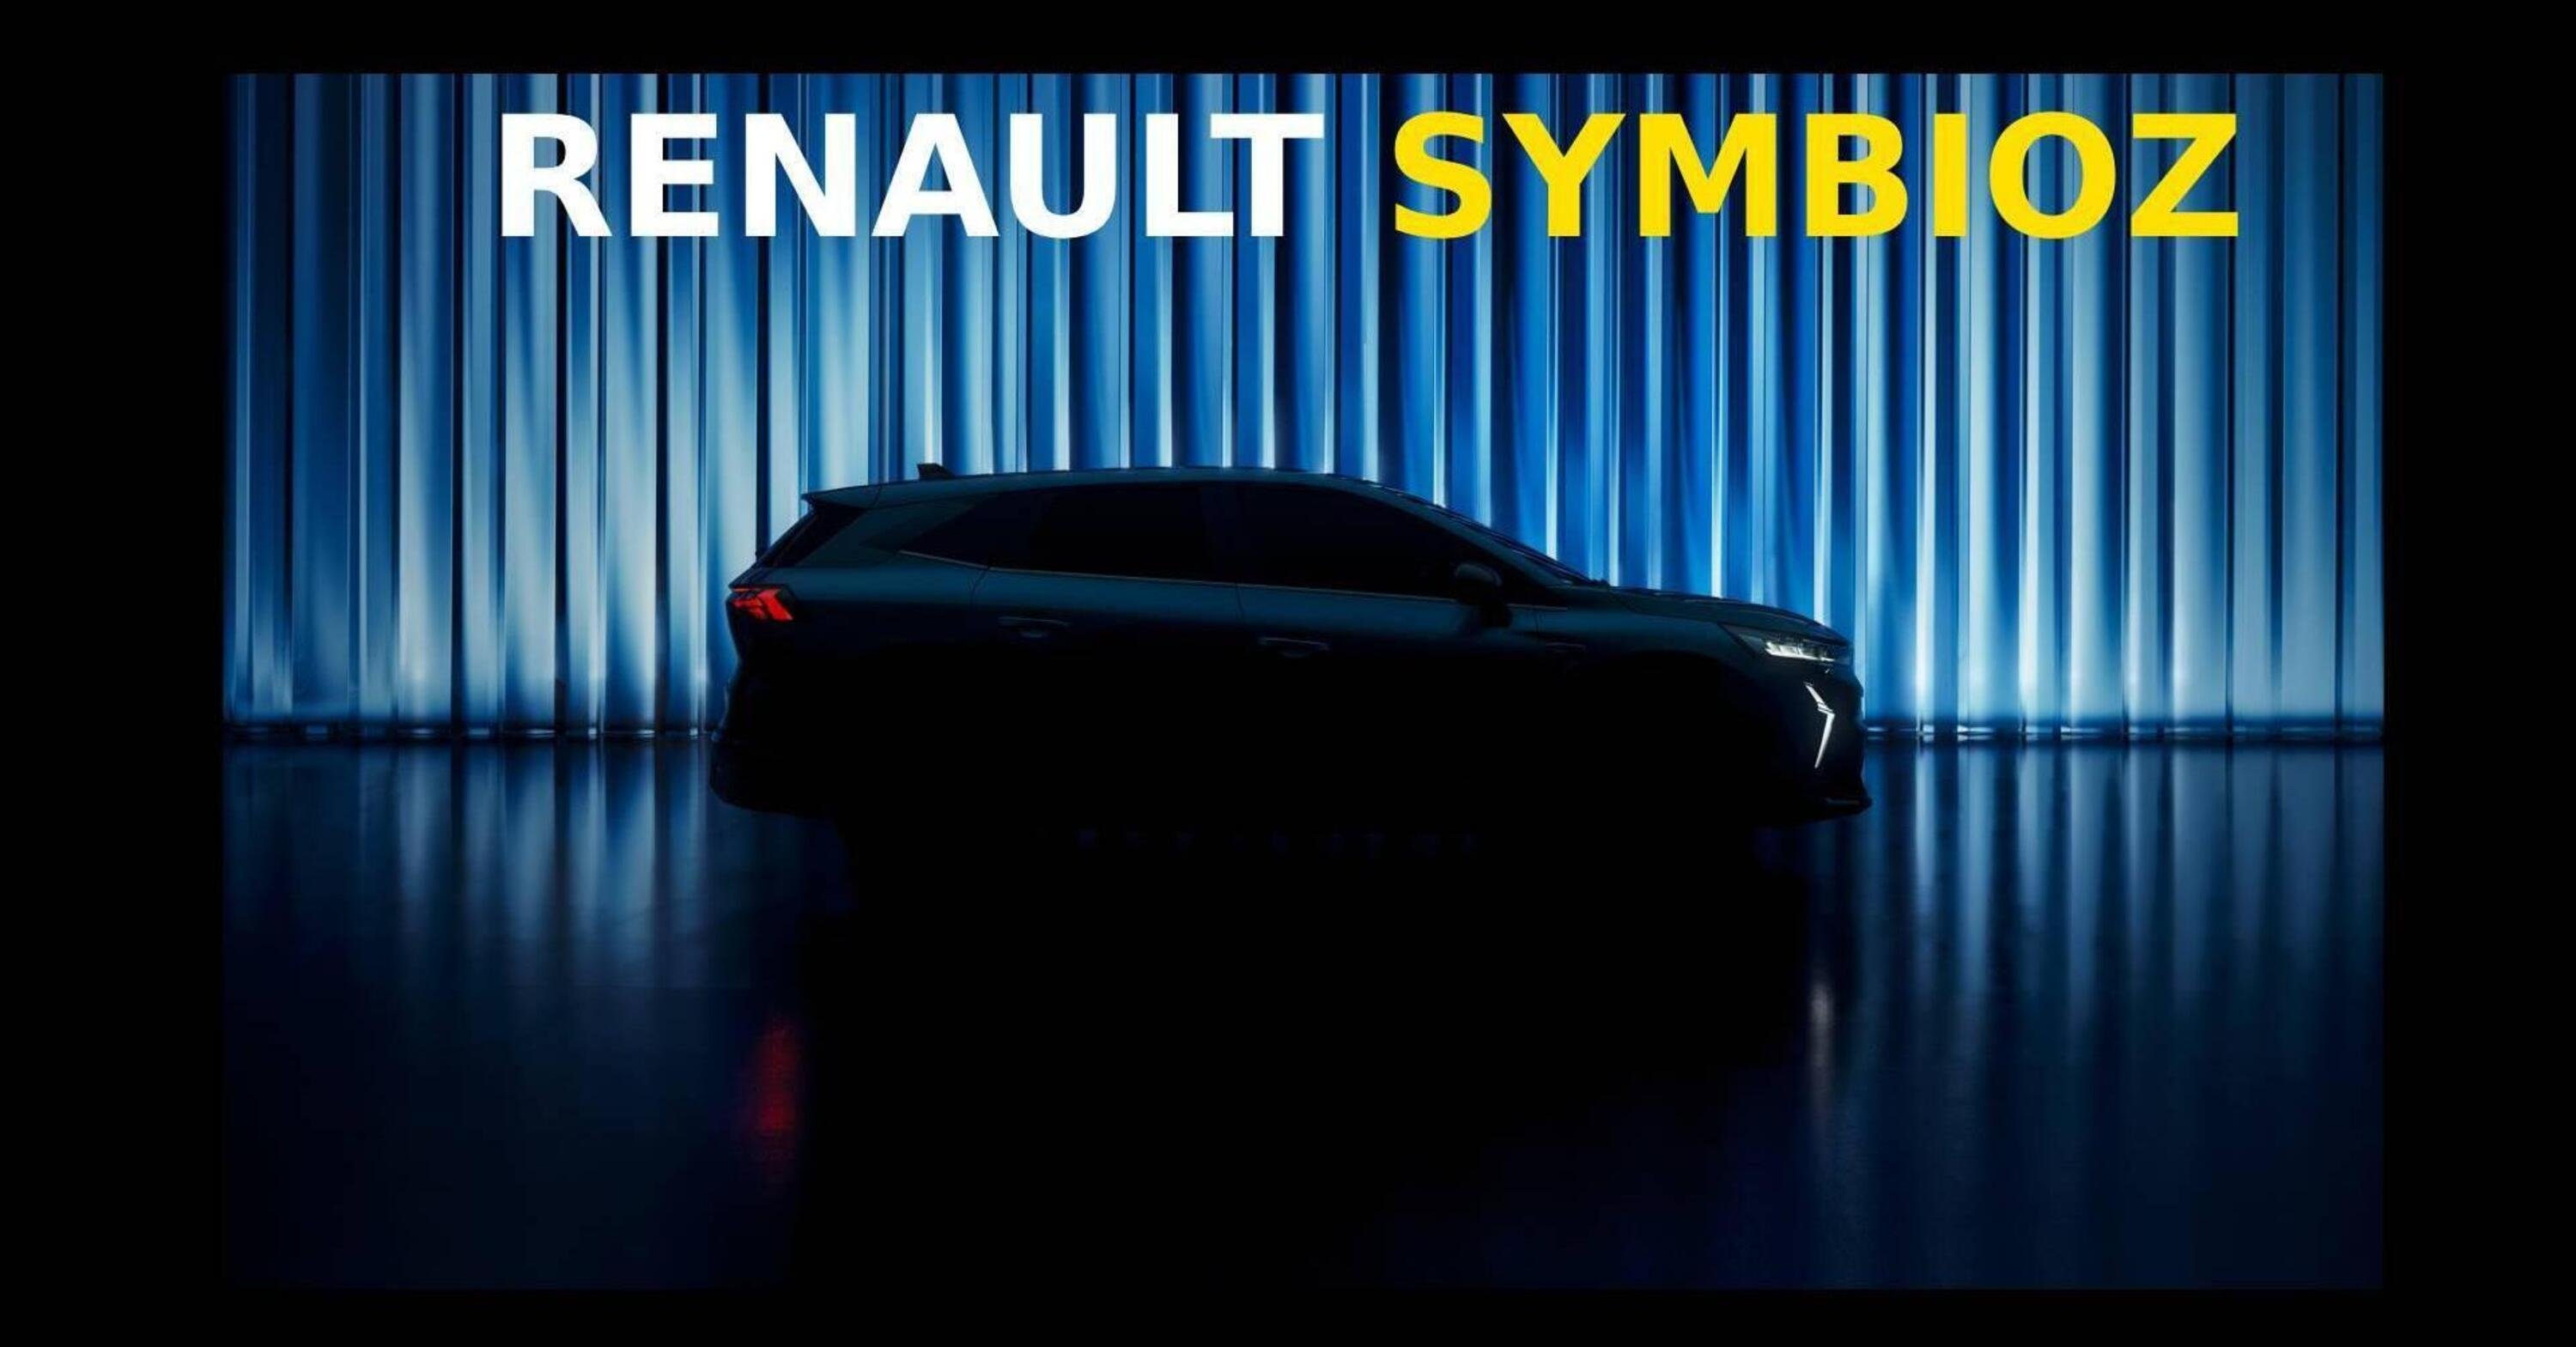 Renault Symbioz: suv compatto che arriva questa primavera